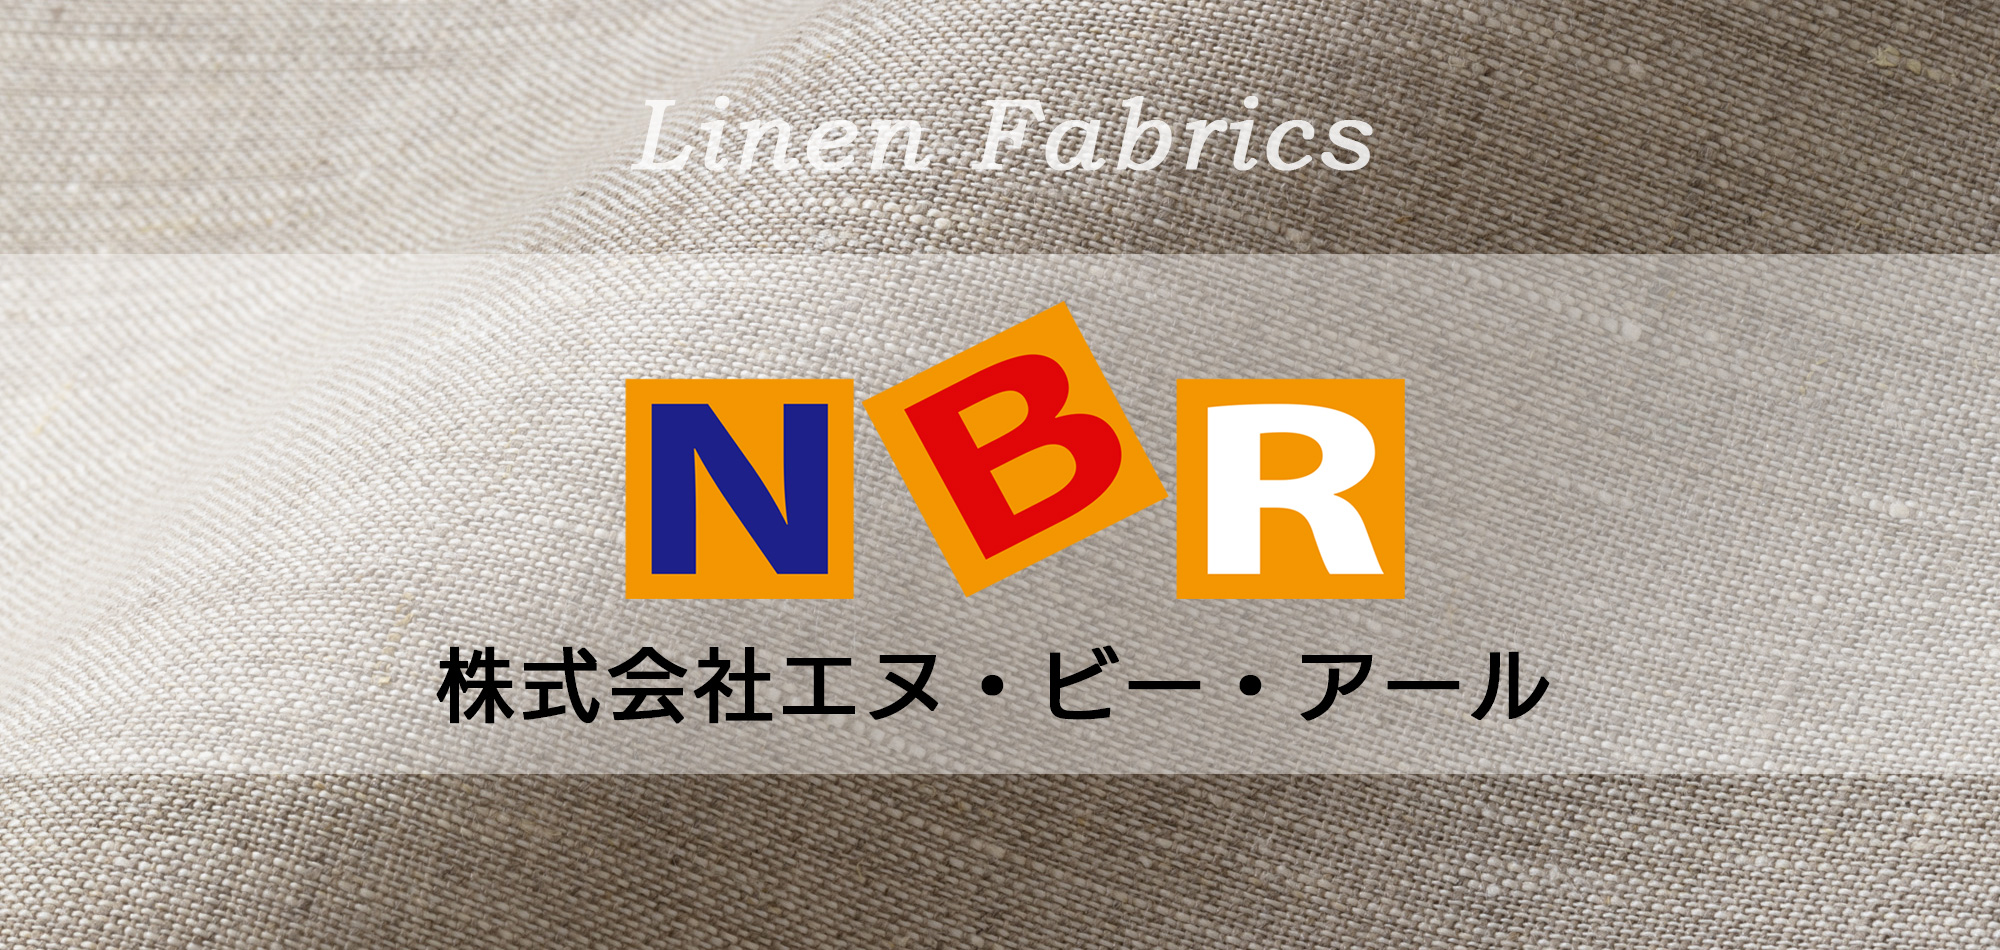 new-commer-nbr-linen